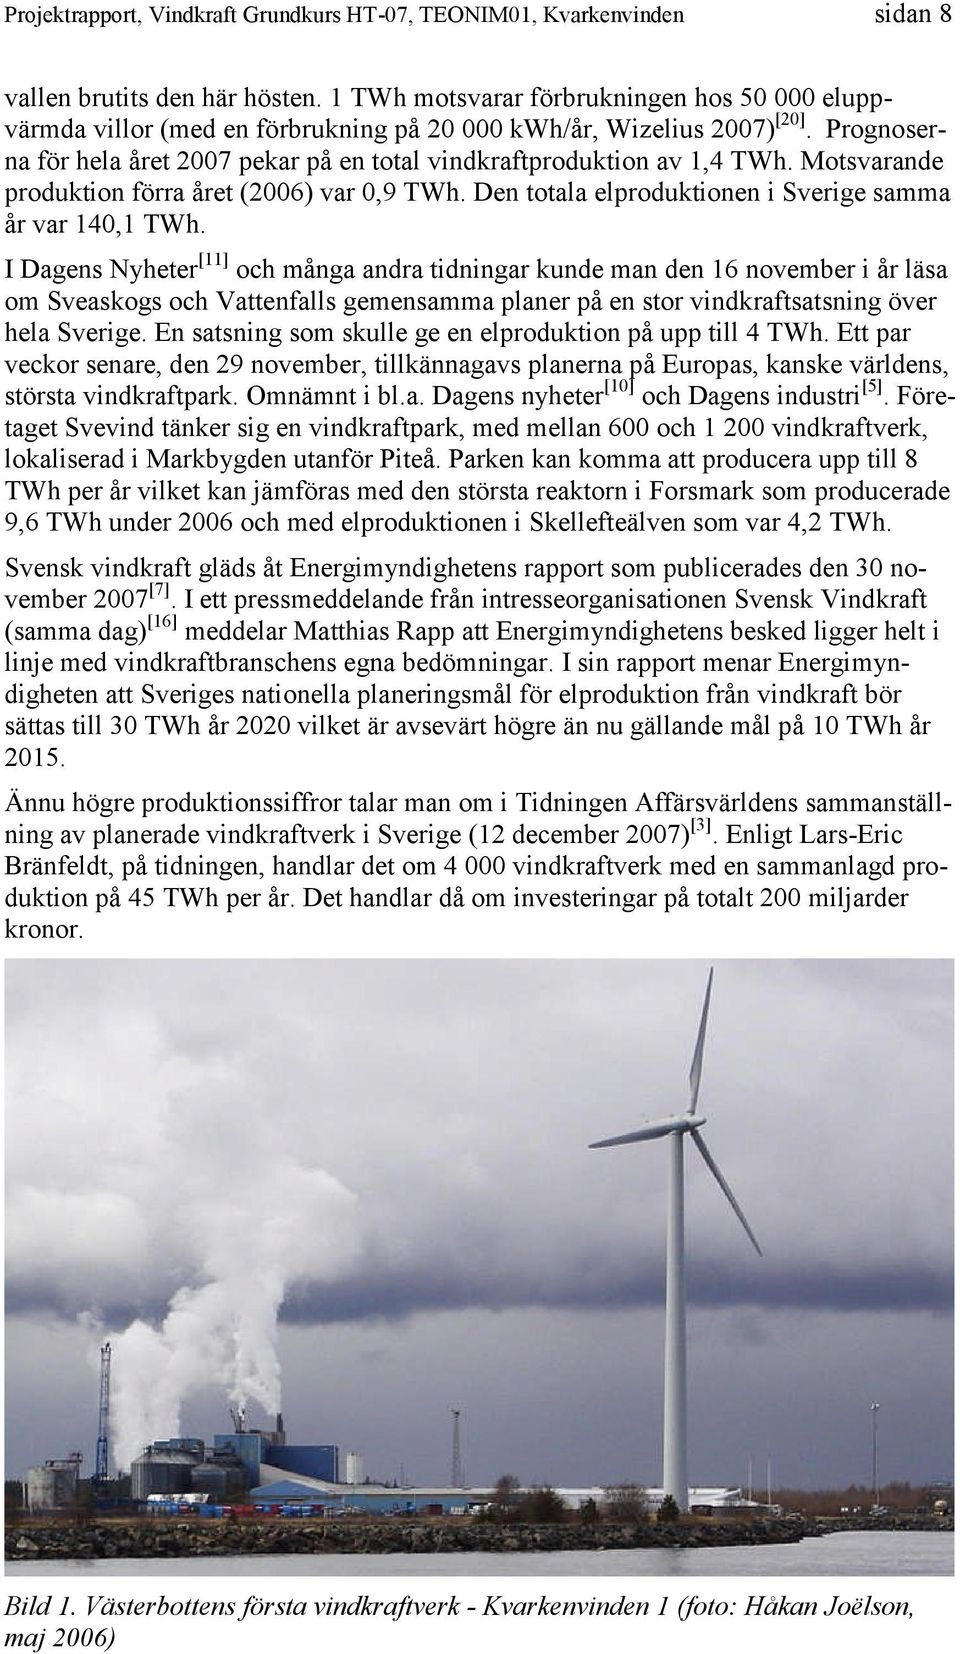 I Dagens Nyheter [11] och många andra tidningar kunde man den 16 november i år läsa om Sveaskogs och Vattenfalls gemensamma planer på en stor vindkraftsatsning över hela Sverige.